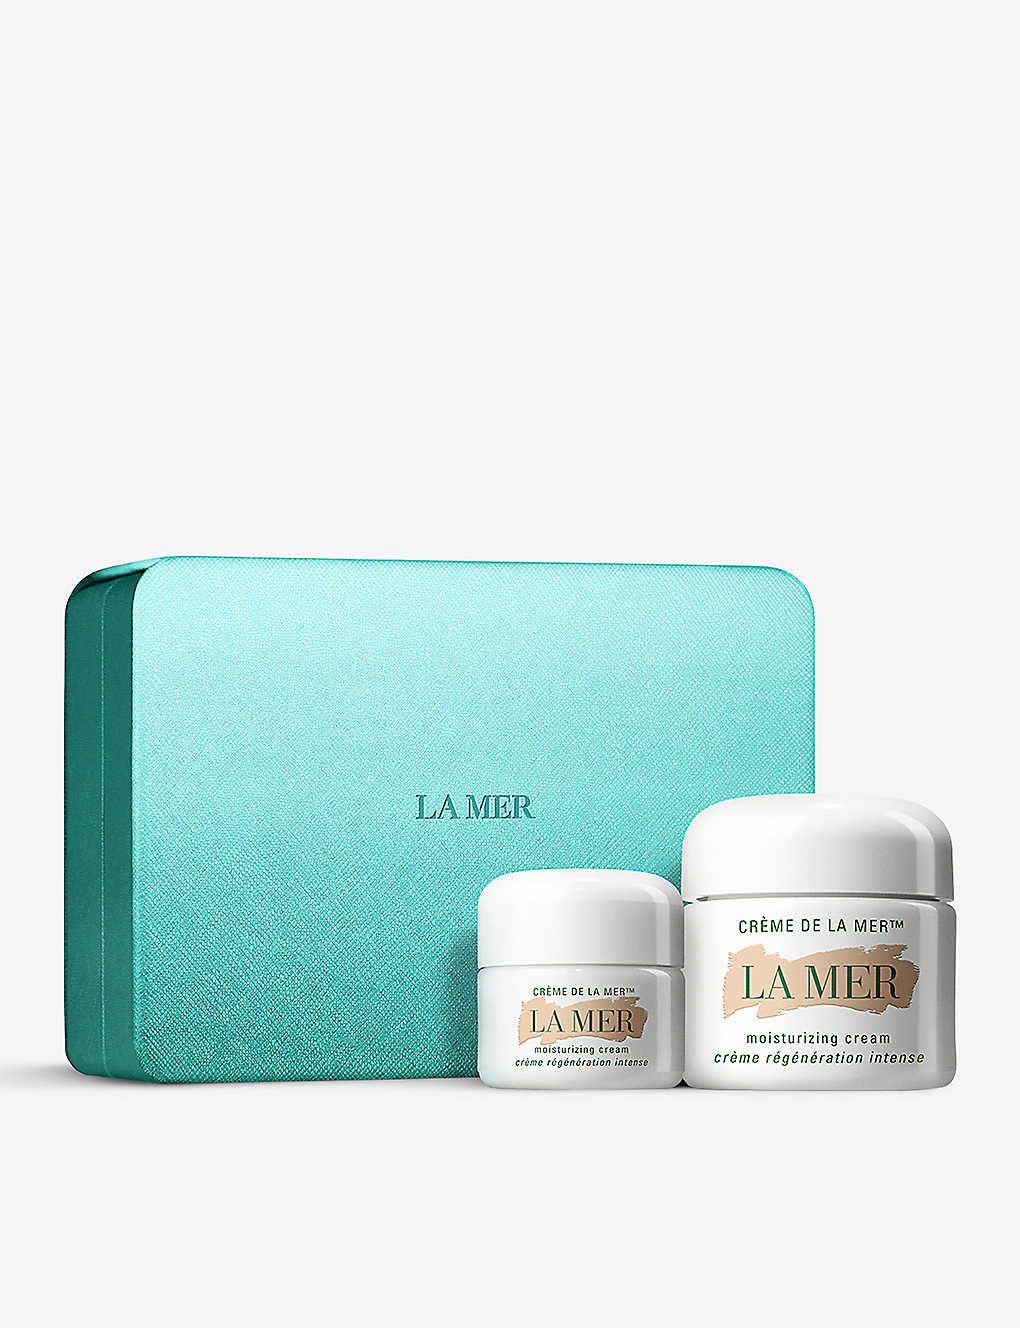 LA MER The Crème De La Mer Duet gift set | Selfridges